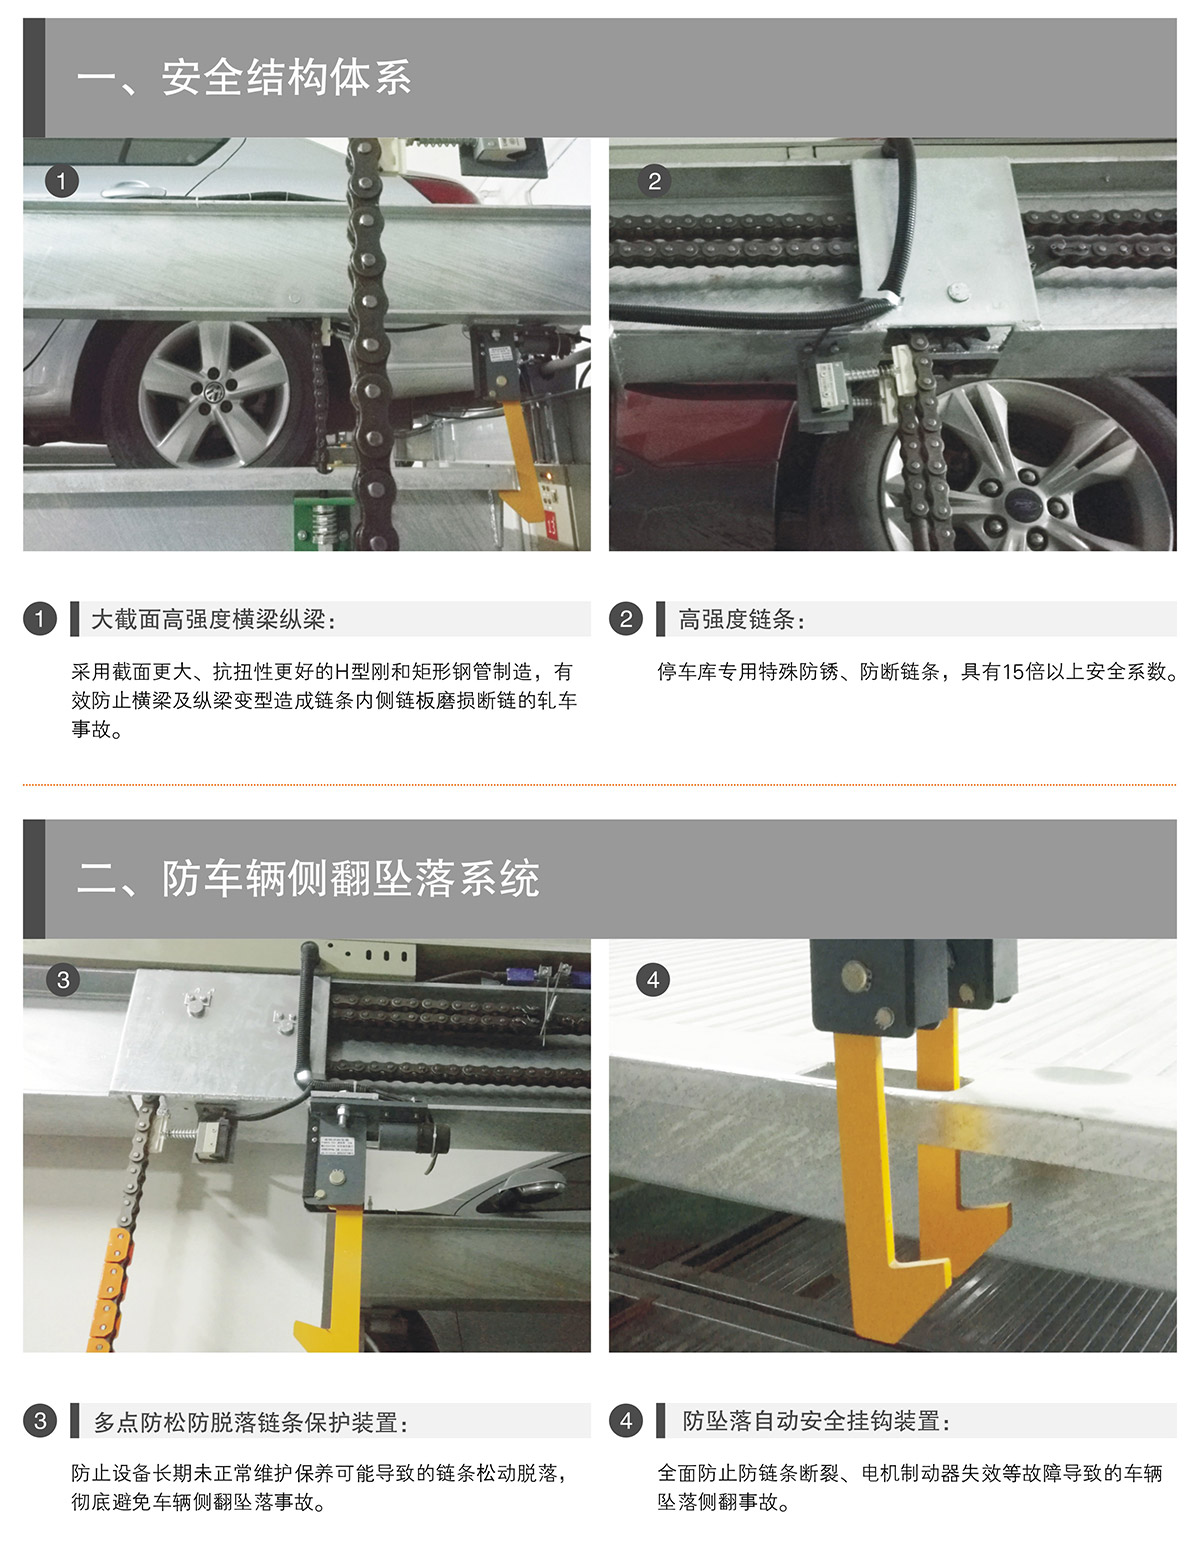 自动停车02PSH升降横移机械立体停车安全结构体系.jpg